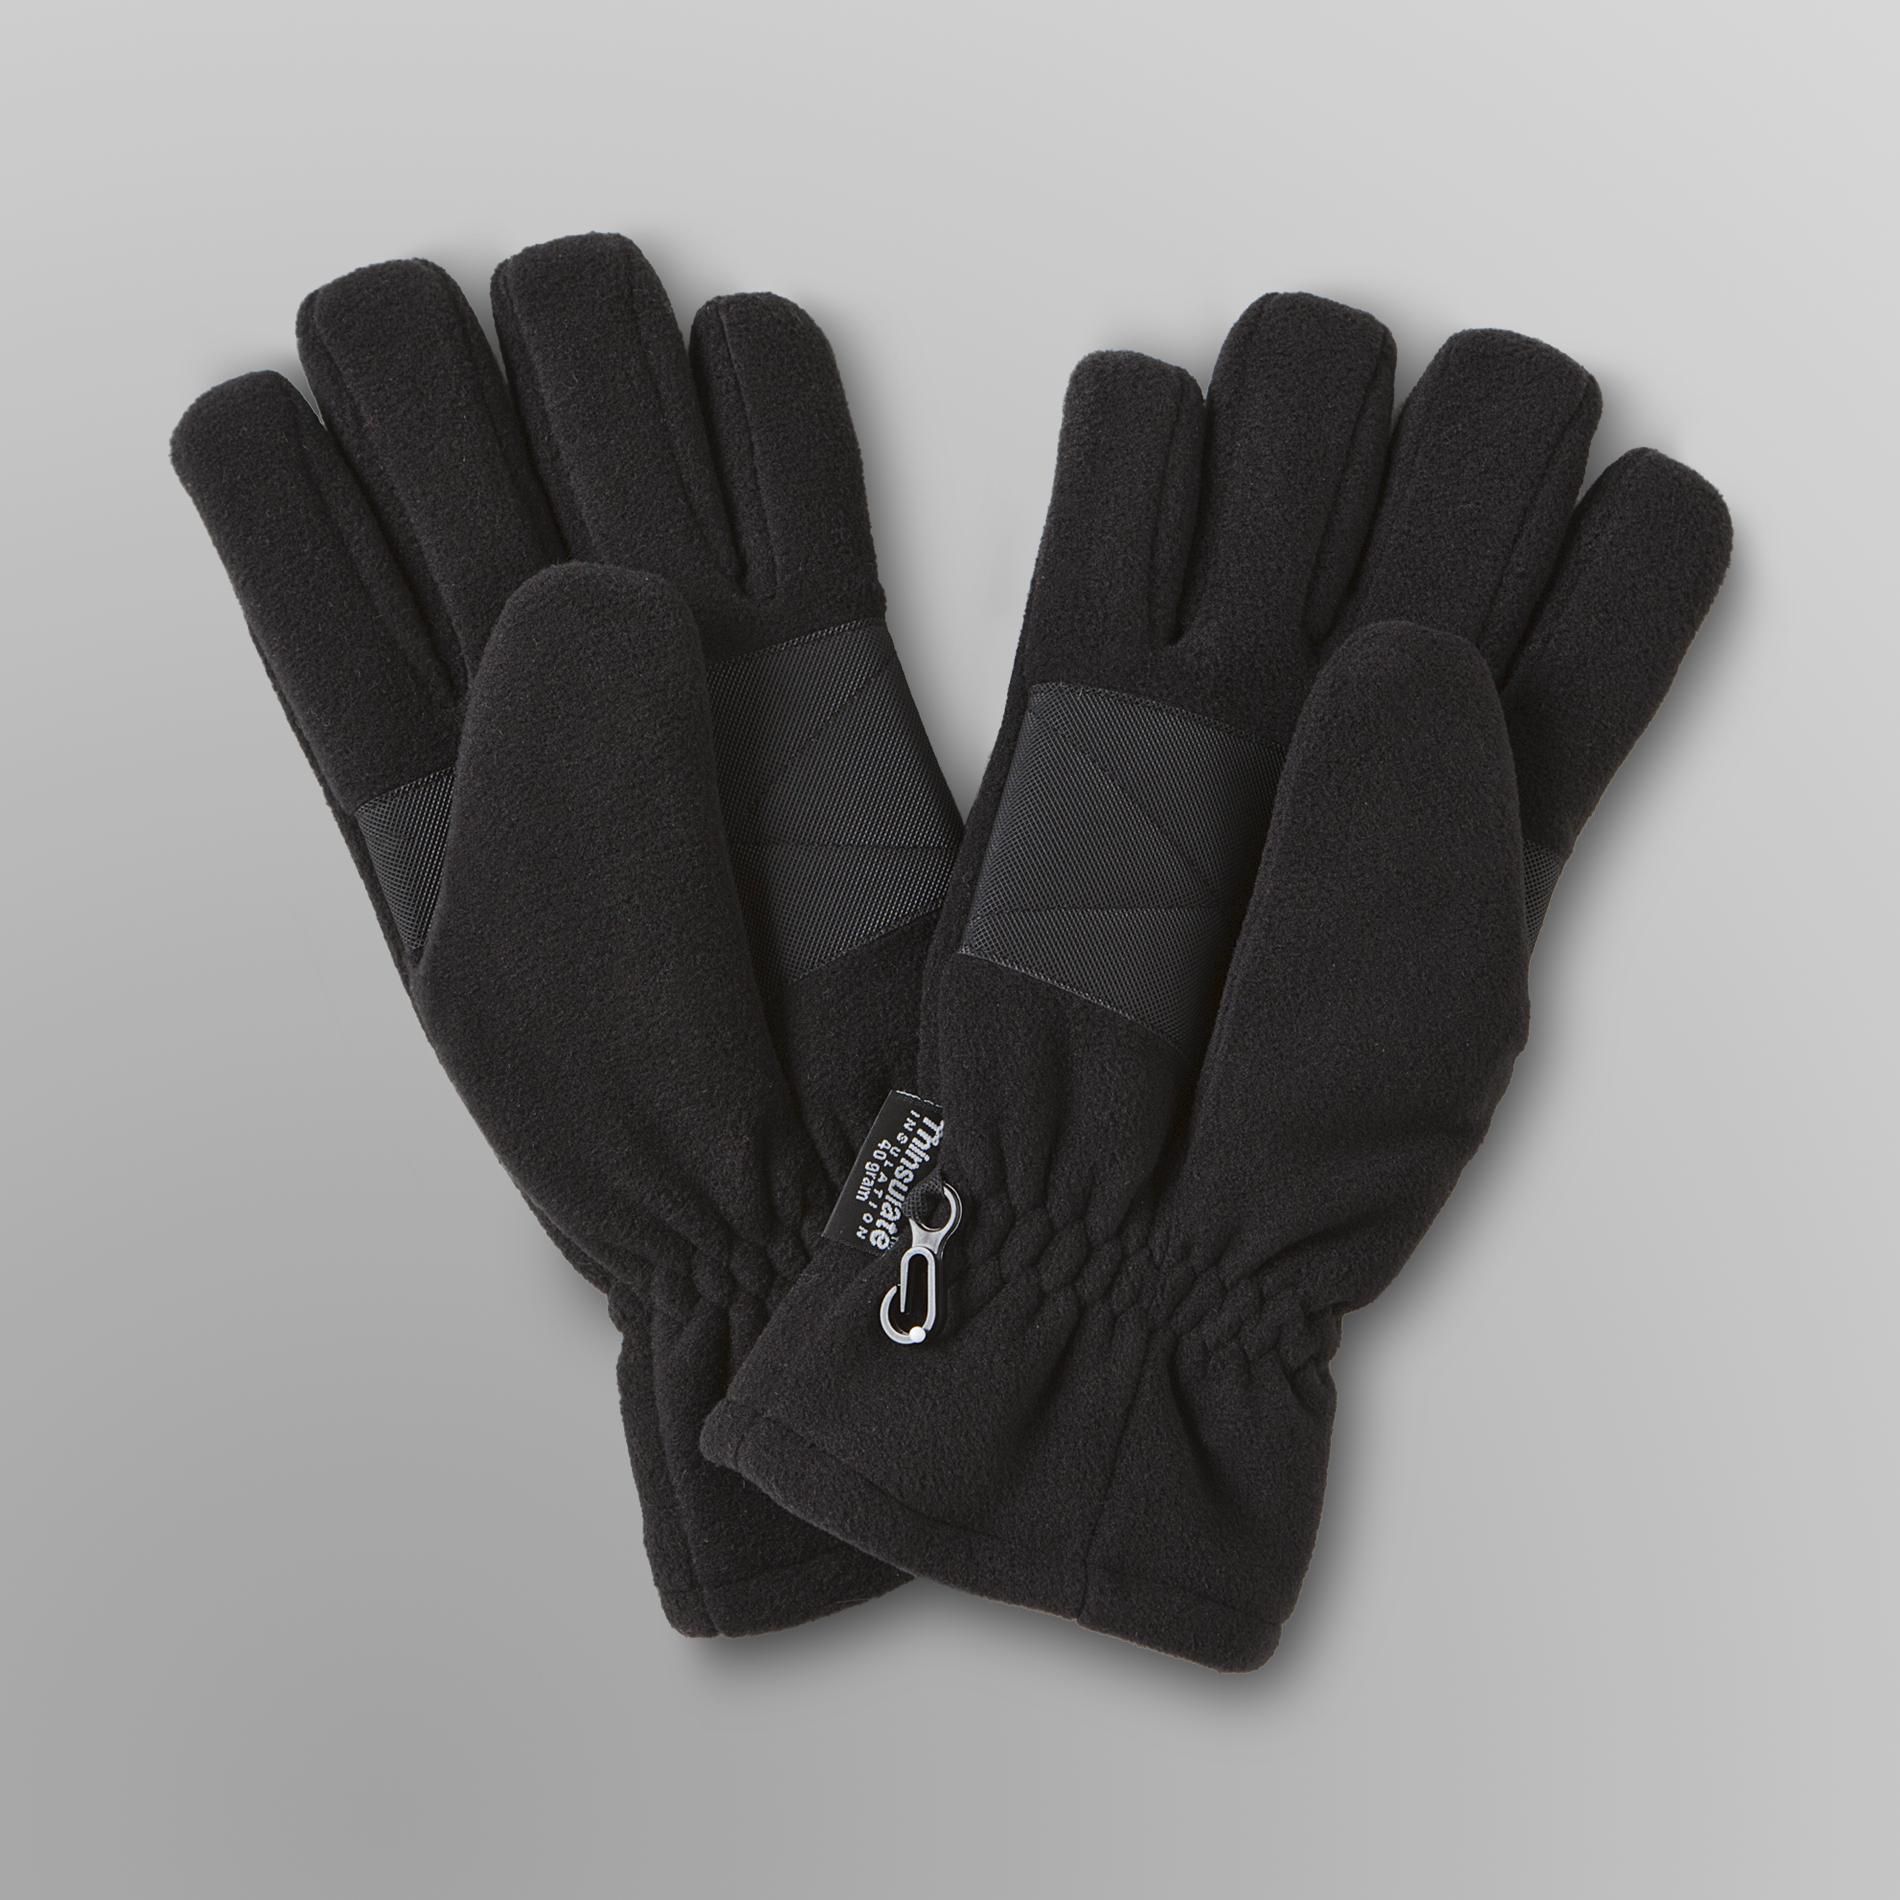 Athletech Men's Fleece Gauntlet Gloves